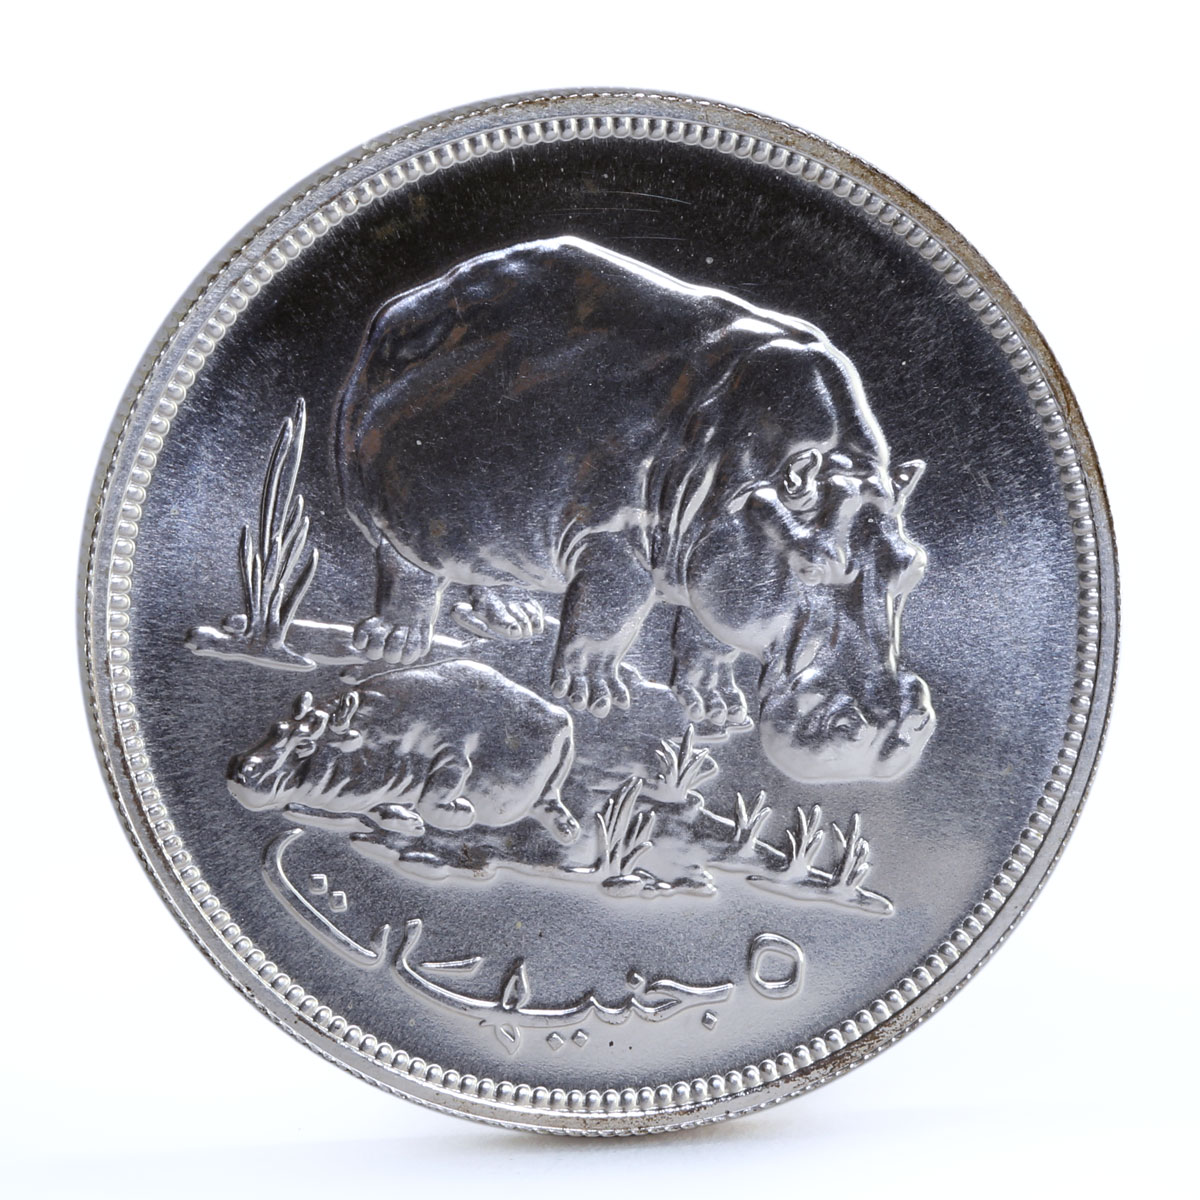 Sudan 5 pounds Conservation Wildlife Hippopotamus Fauna silver coin 1976